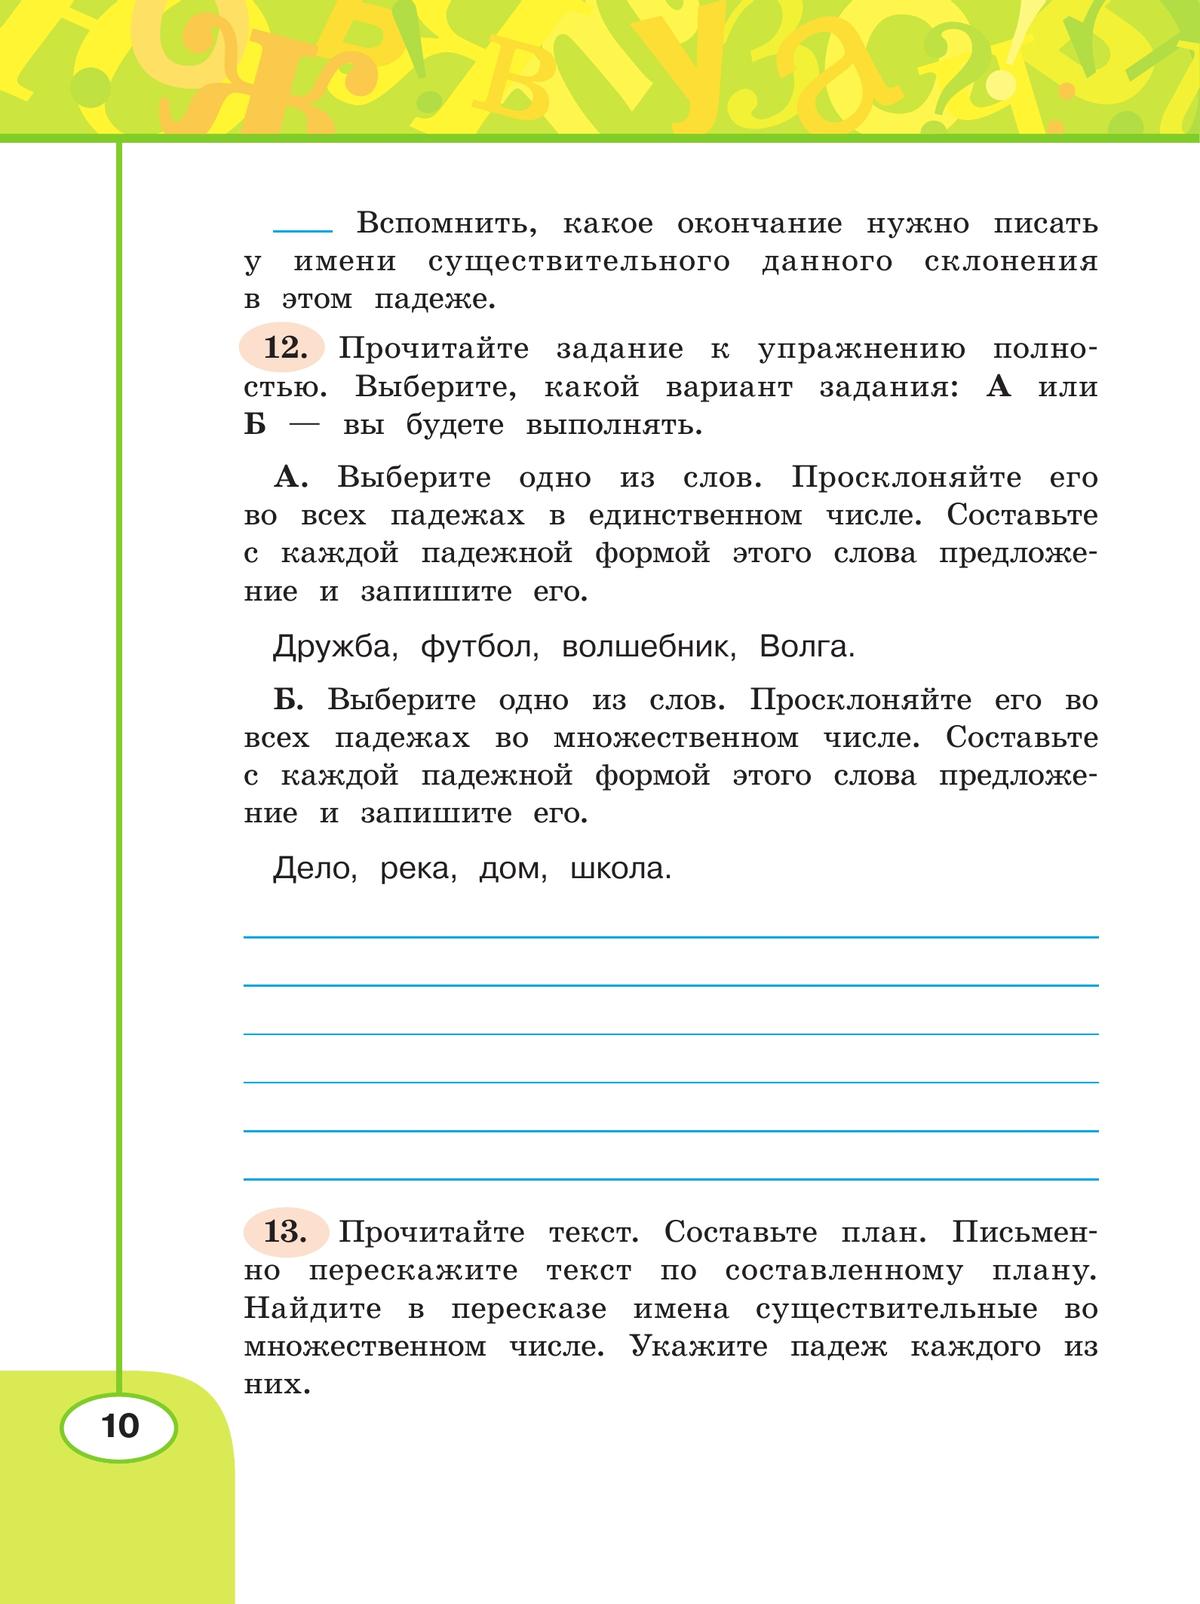 Русский язык. Рабочая тетрадь. 4 класс. В 2 частях. Часть 2 6